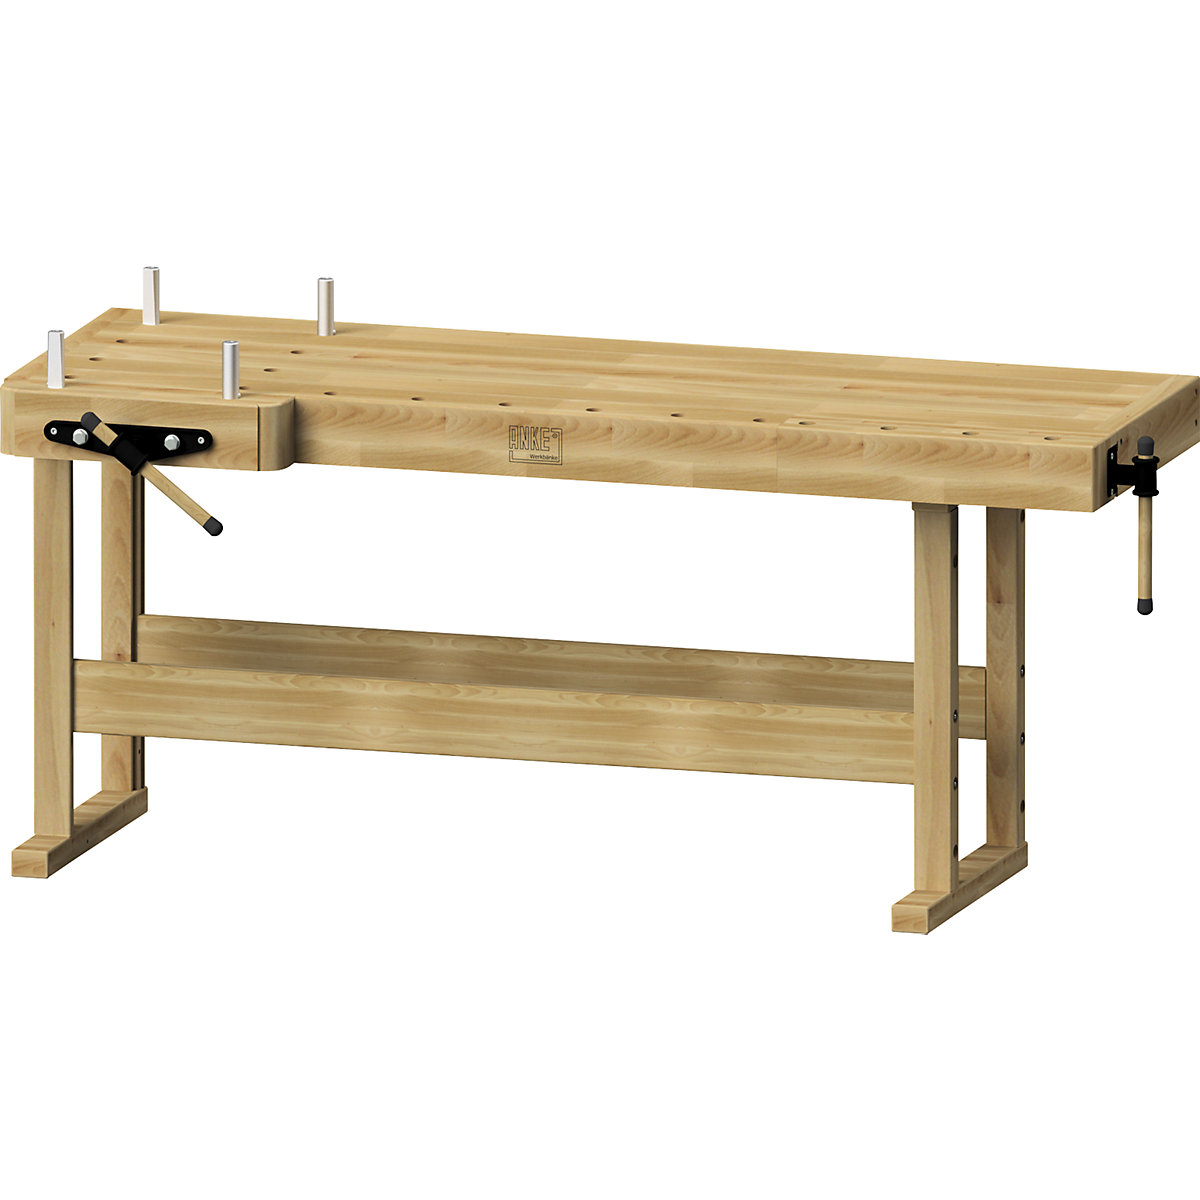 Profesionalna miza za skobljanje – ANKE